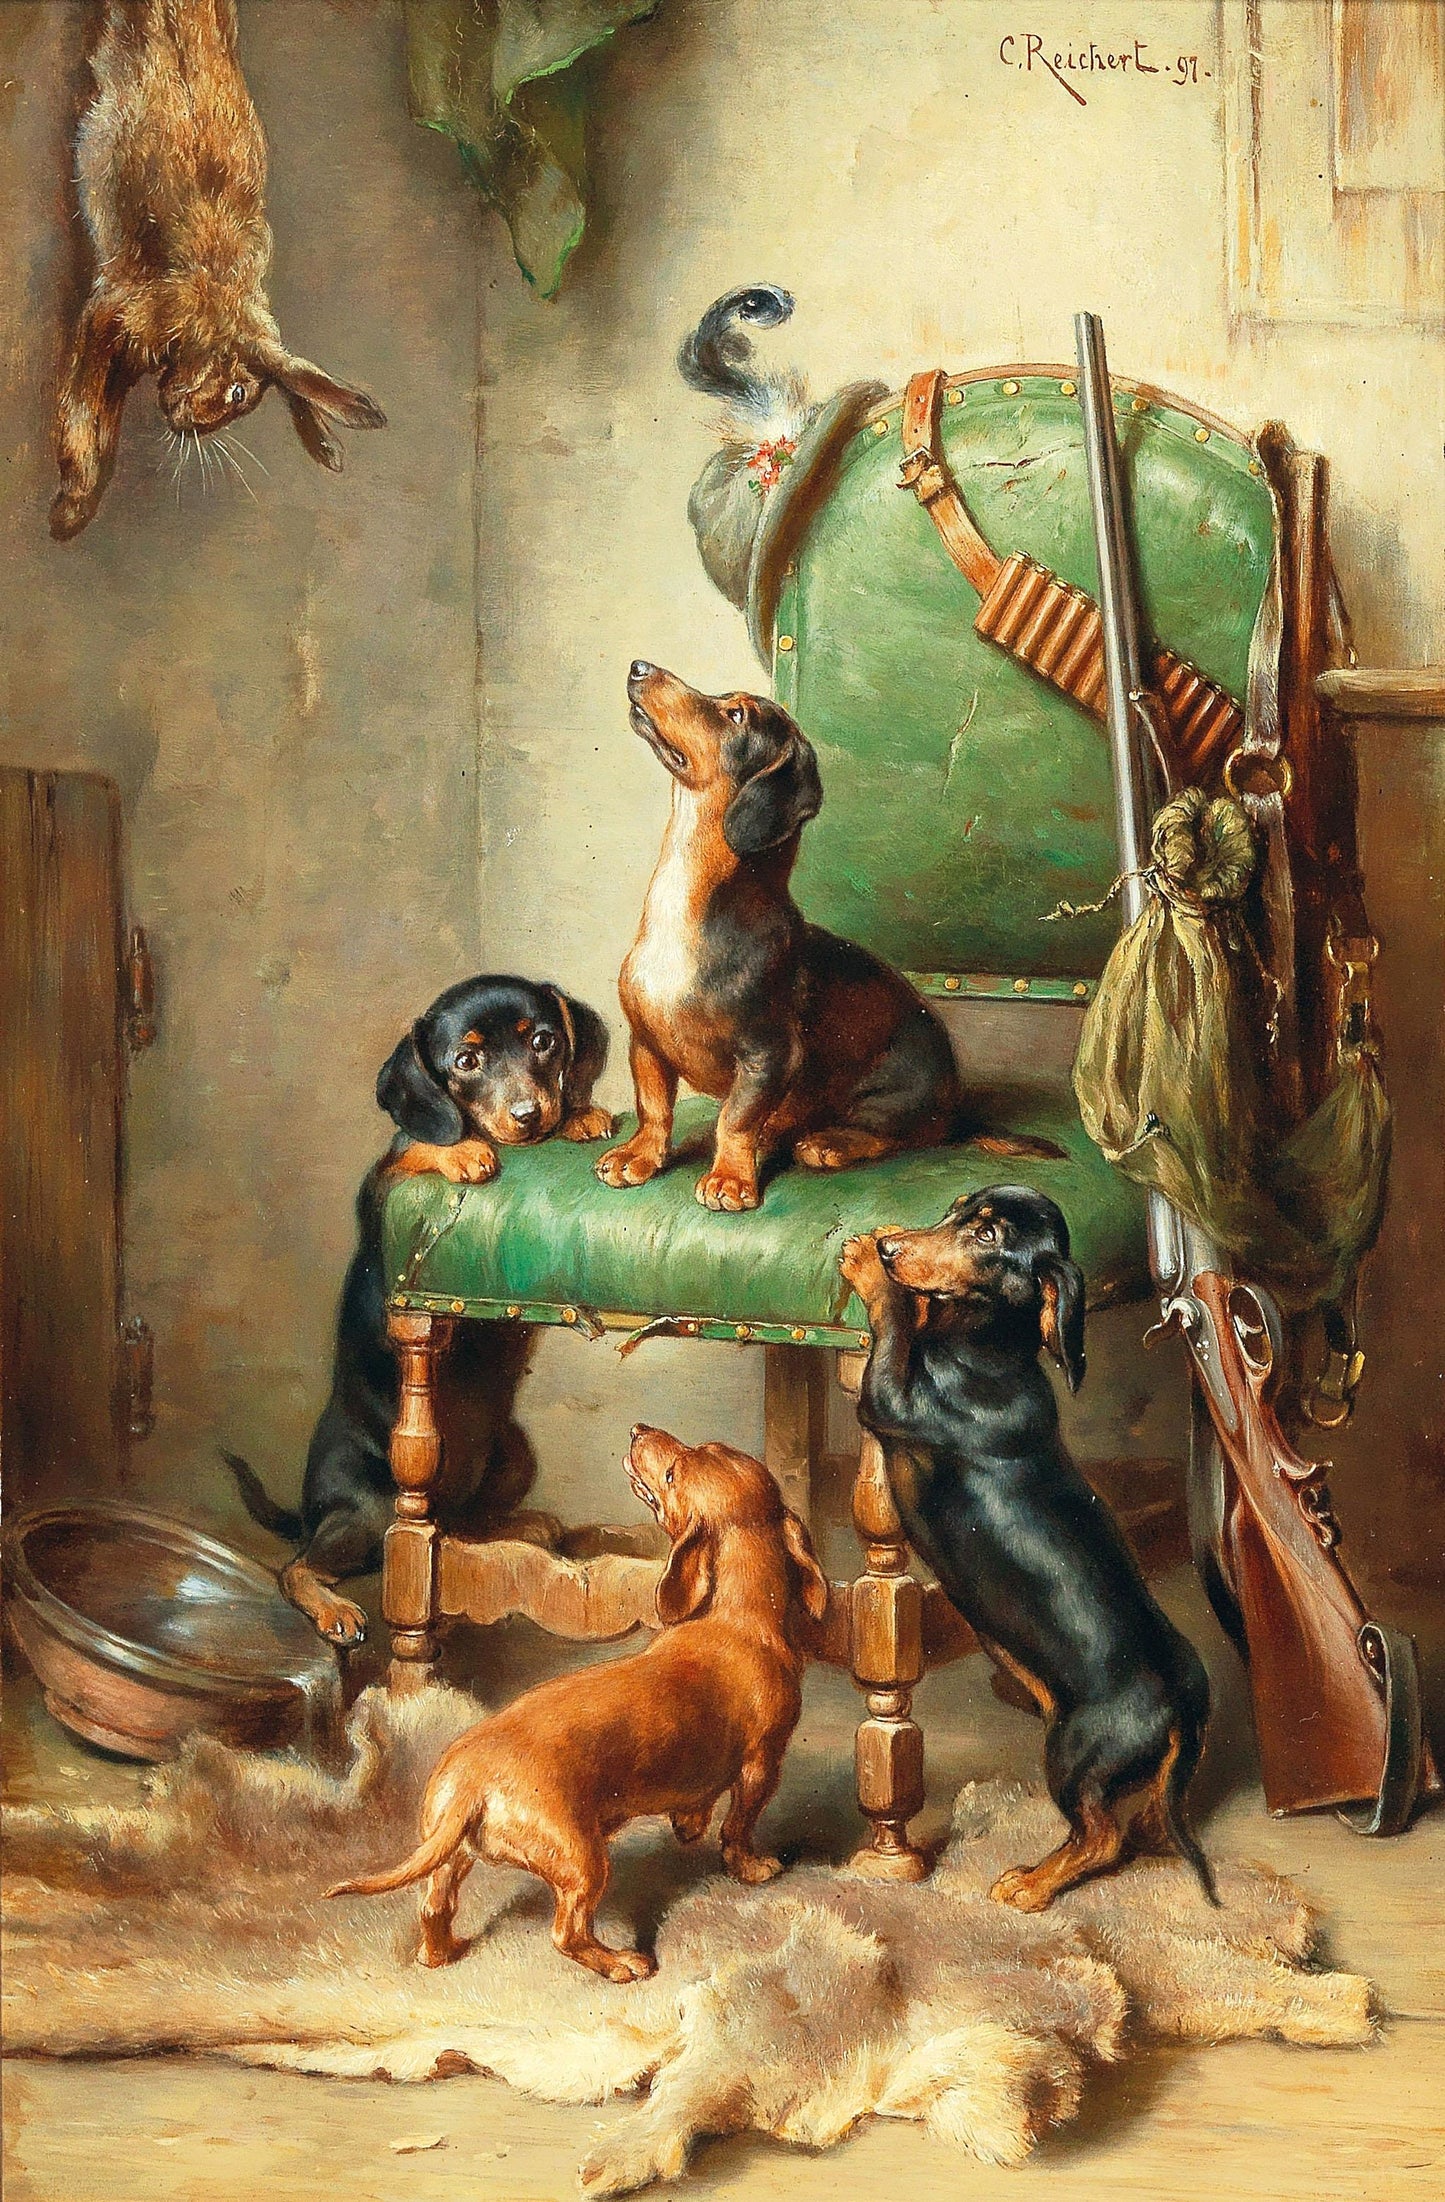 Carl Reichert Dog & Puppy Artworks Set 1 [33 Images]